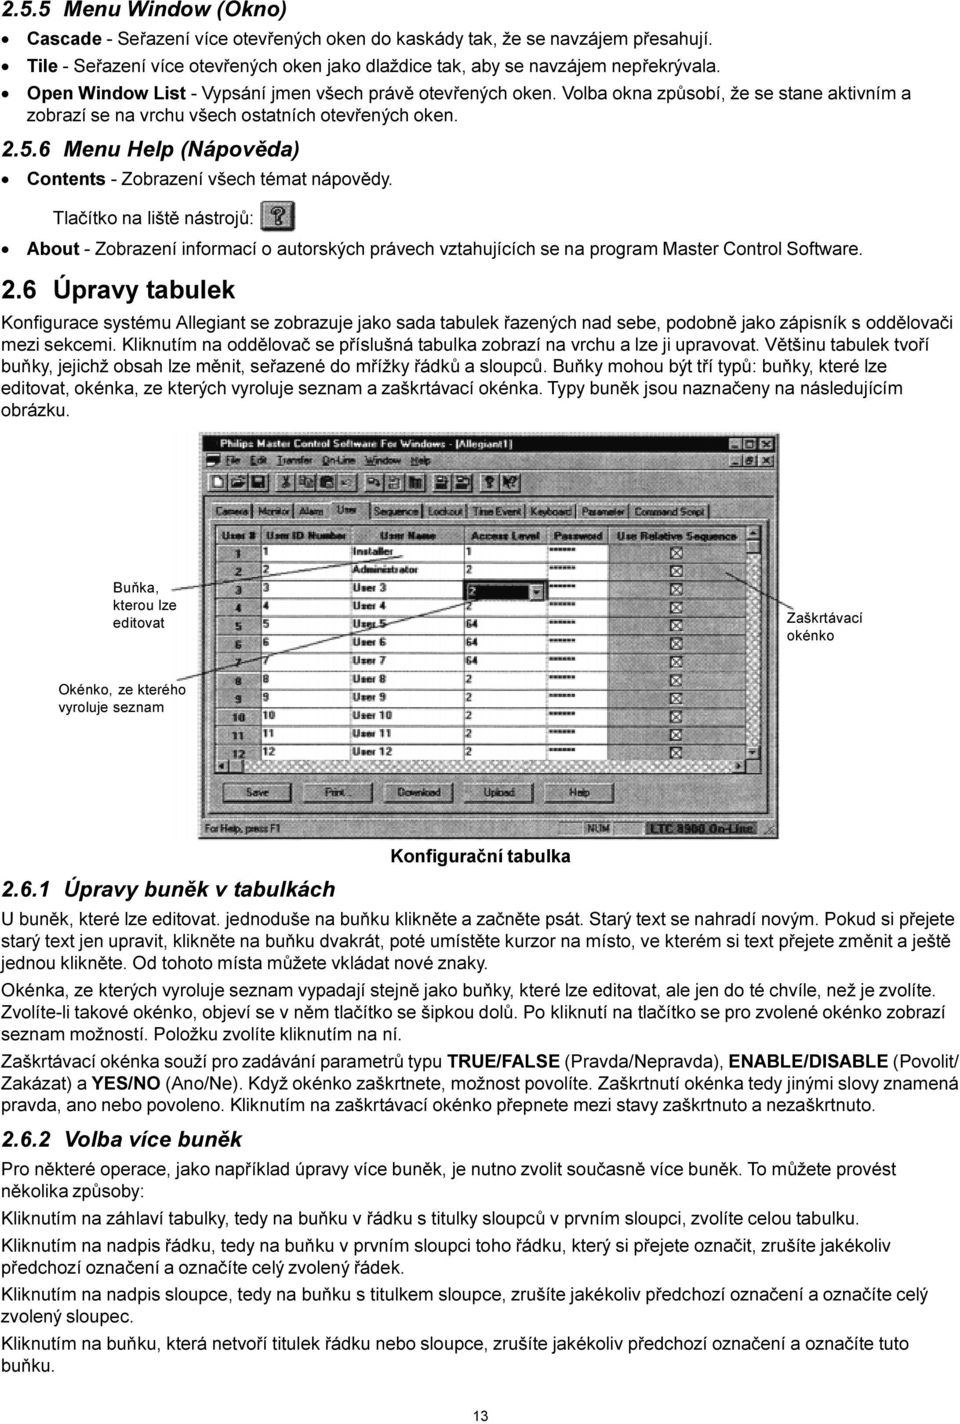 6 Menu Help (Nápovìda) Contents - Zobrazení všech témat nápovìdy. Tlaèítko na lištì nástrojù: About - Zobrazení informací o autorských právech vztahujících se na program Master Control Software. 2.